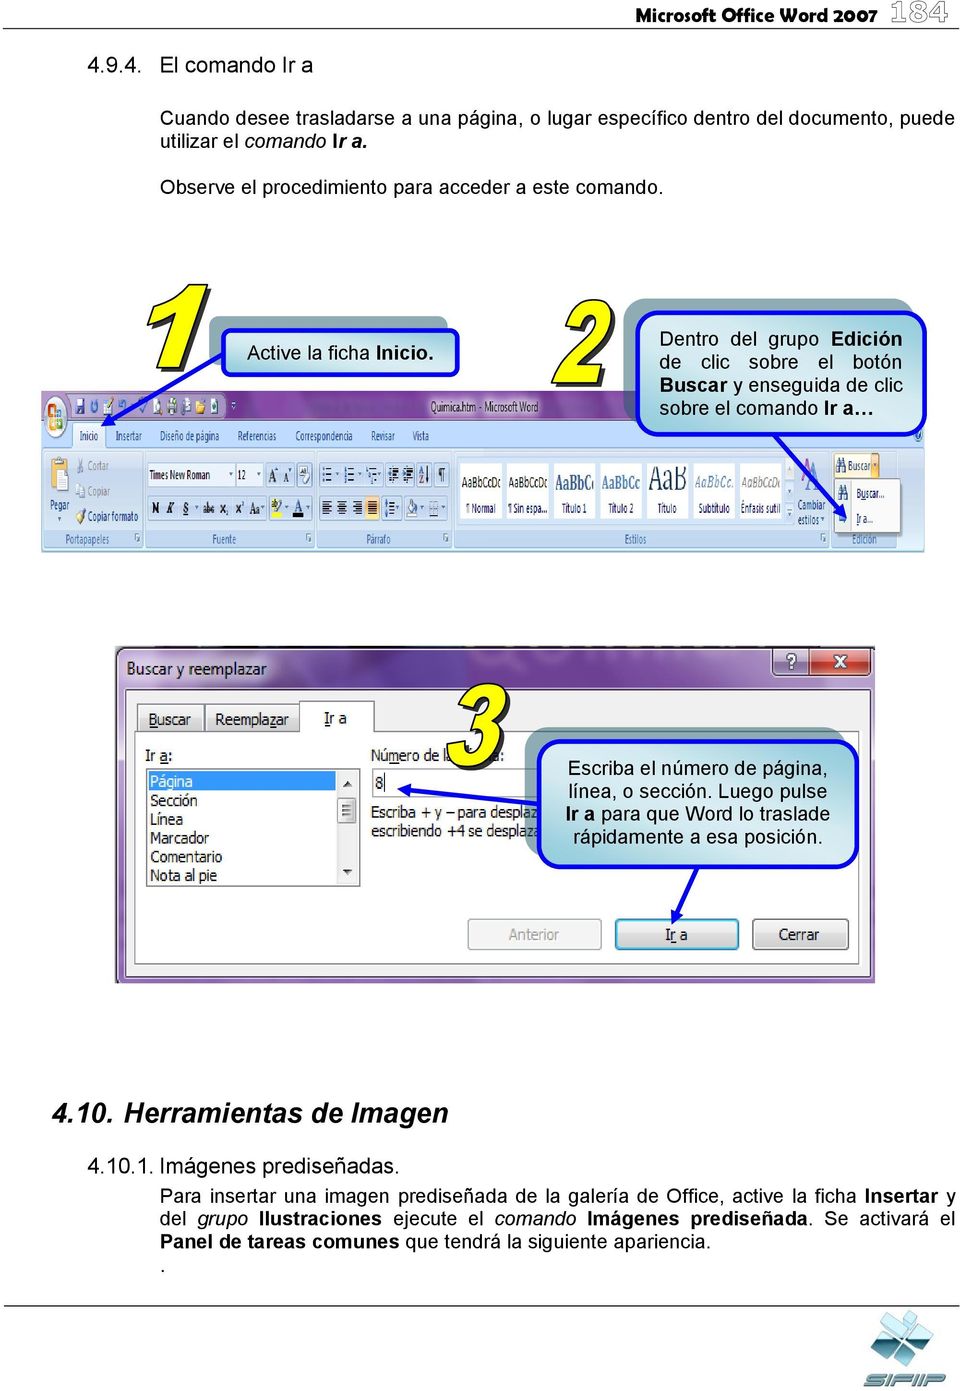 Dentro del grupo Edición de clic sobre el botón Buscar y enseguida de clic sobre el comando Ir a Escriba el número de página, línea, o sección.